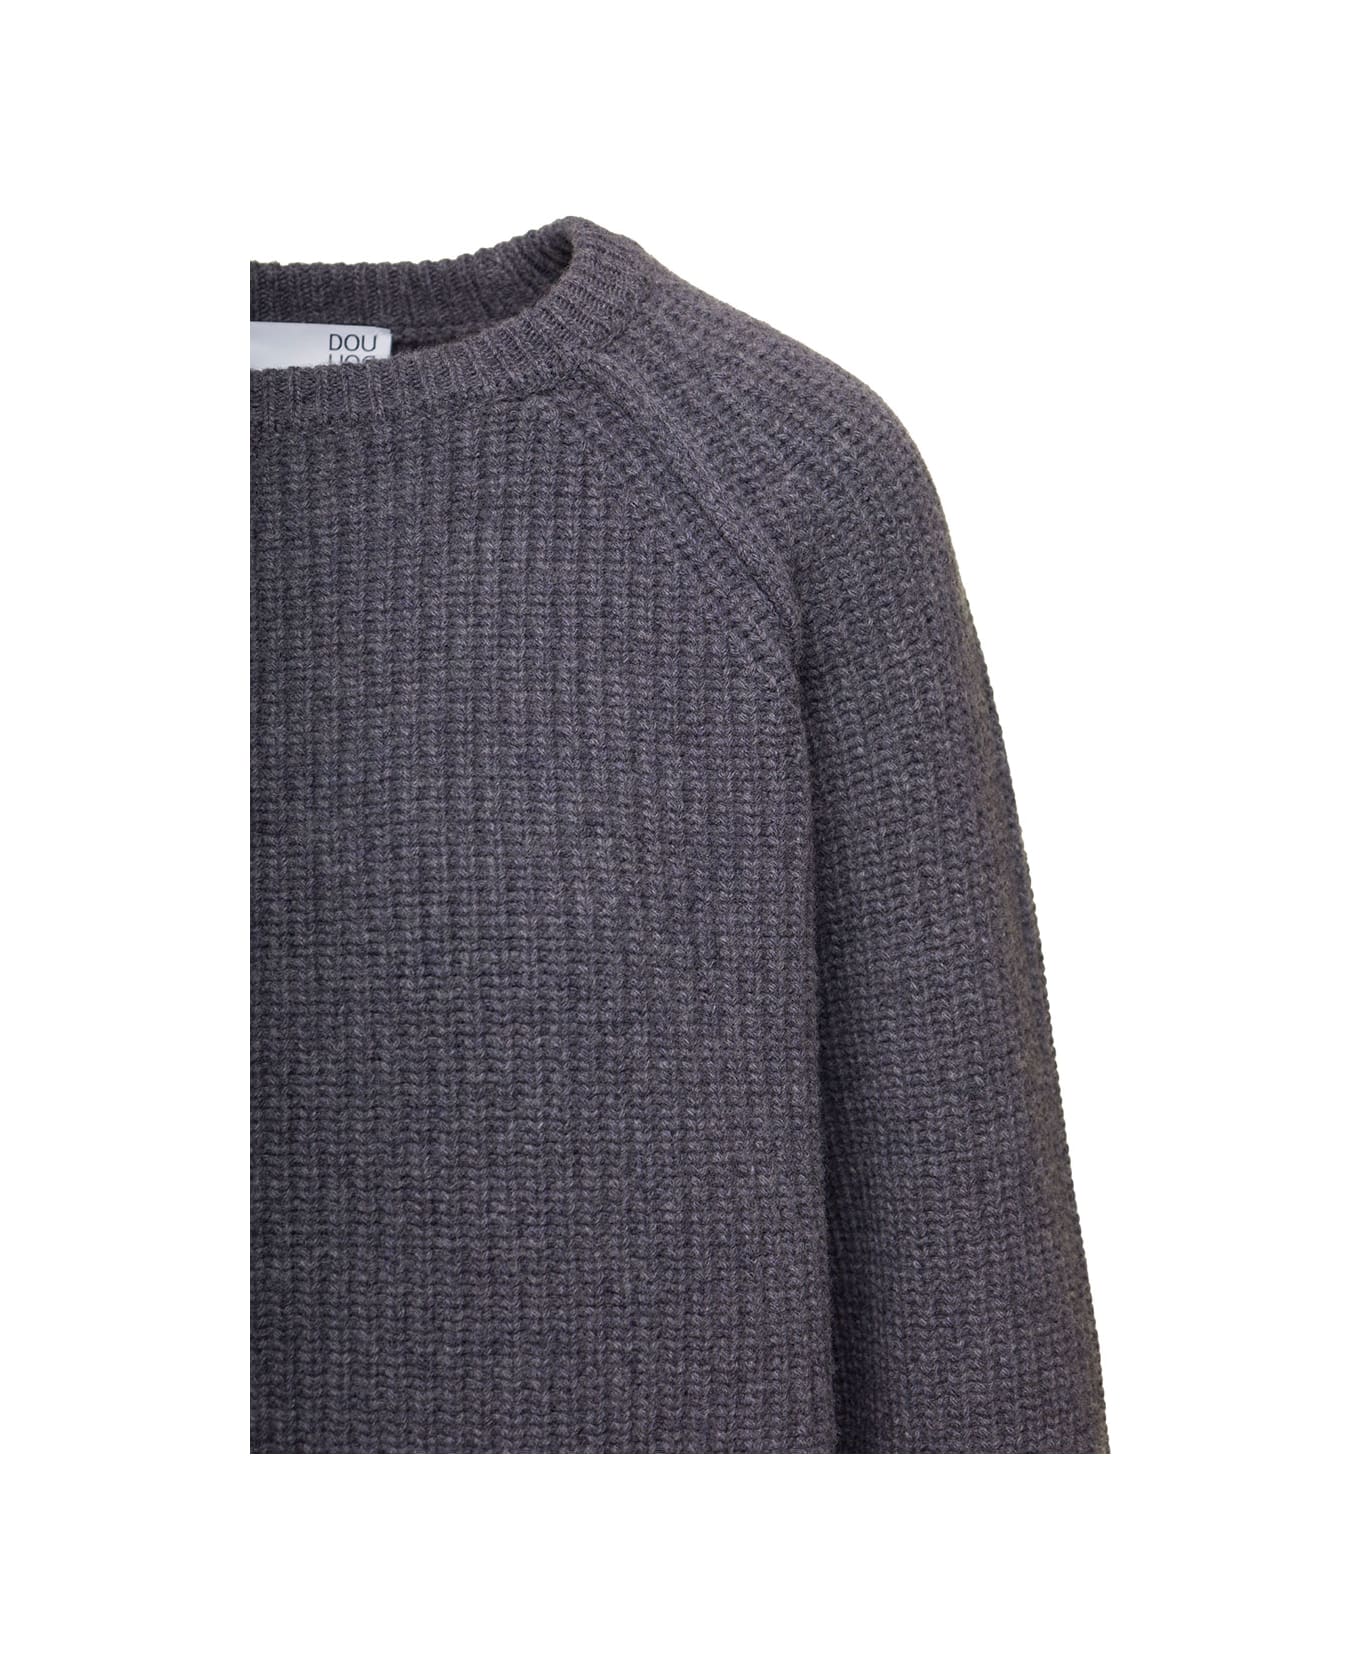 Douuod Grey Fisherman's Knit Crewneck Sweater In Wool Woman Douuod - Grey